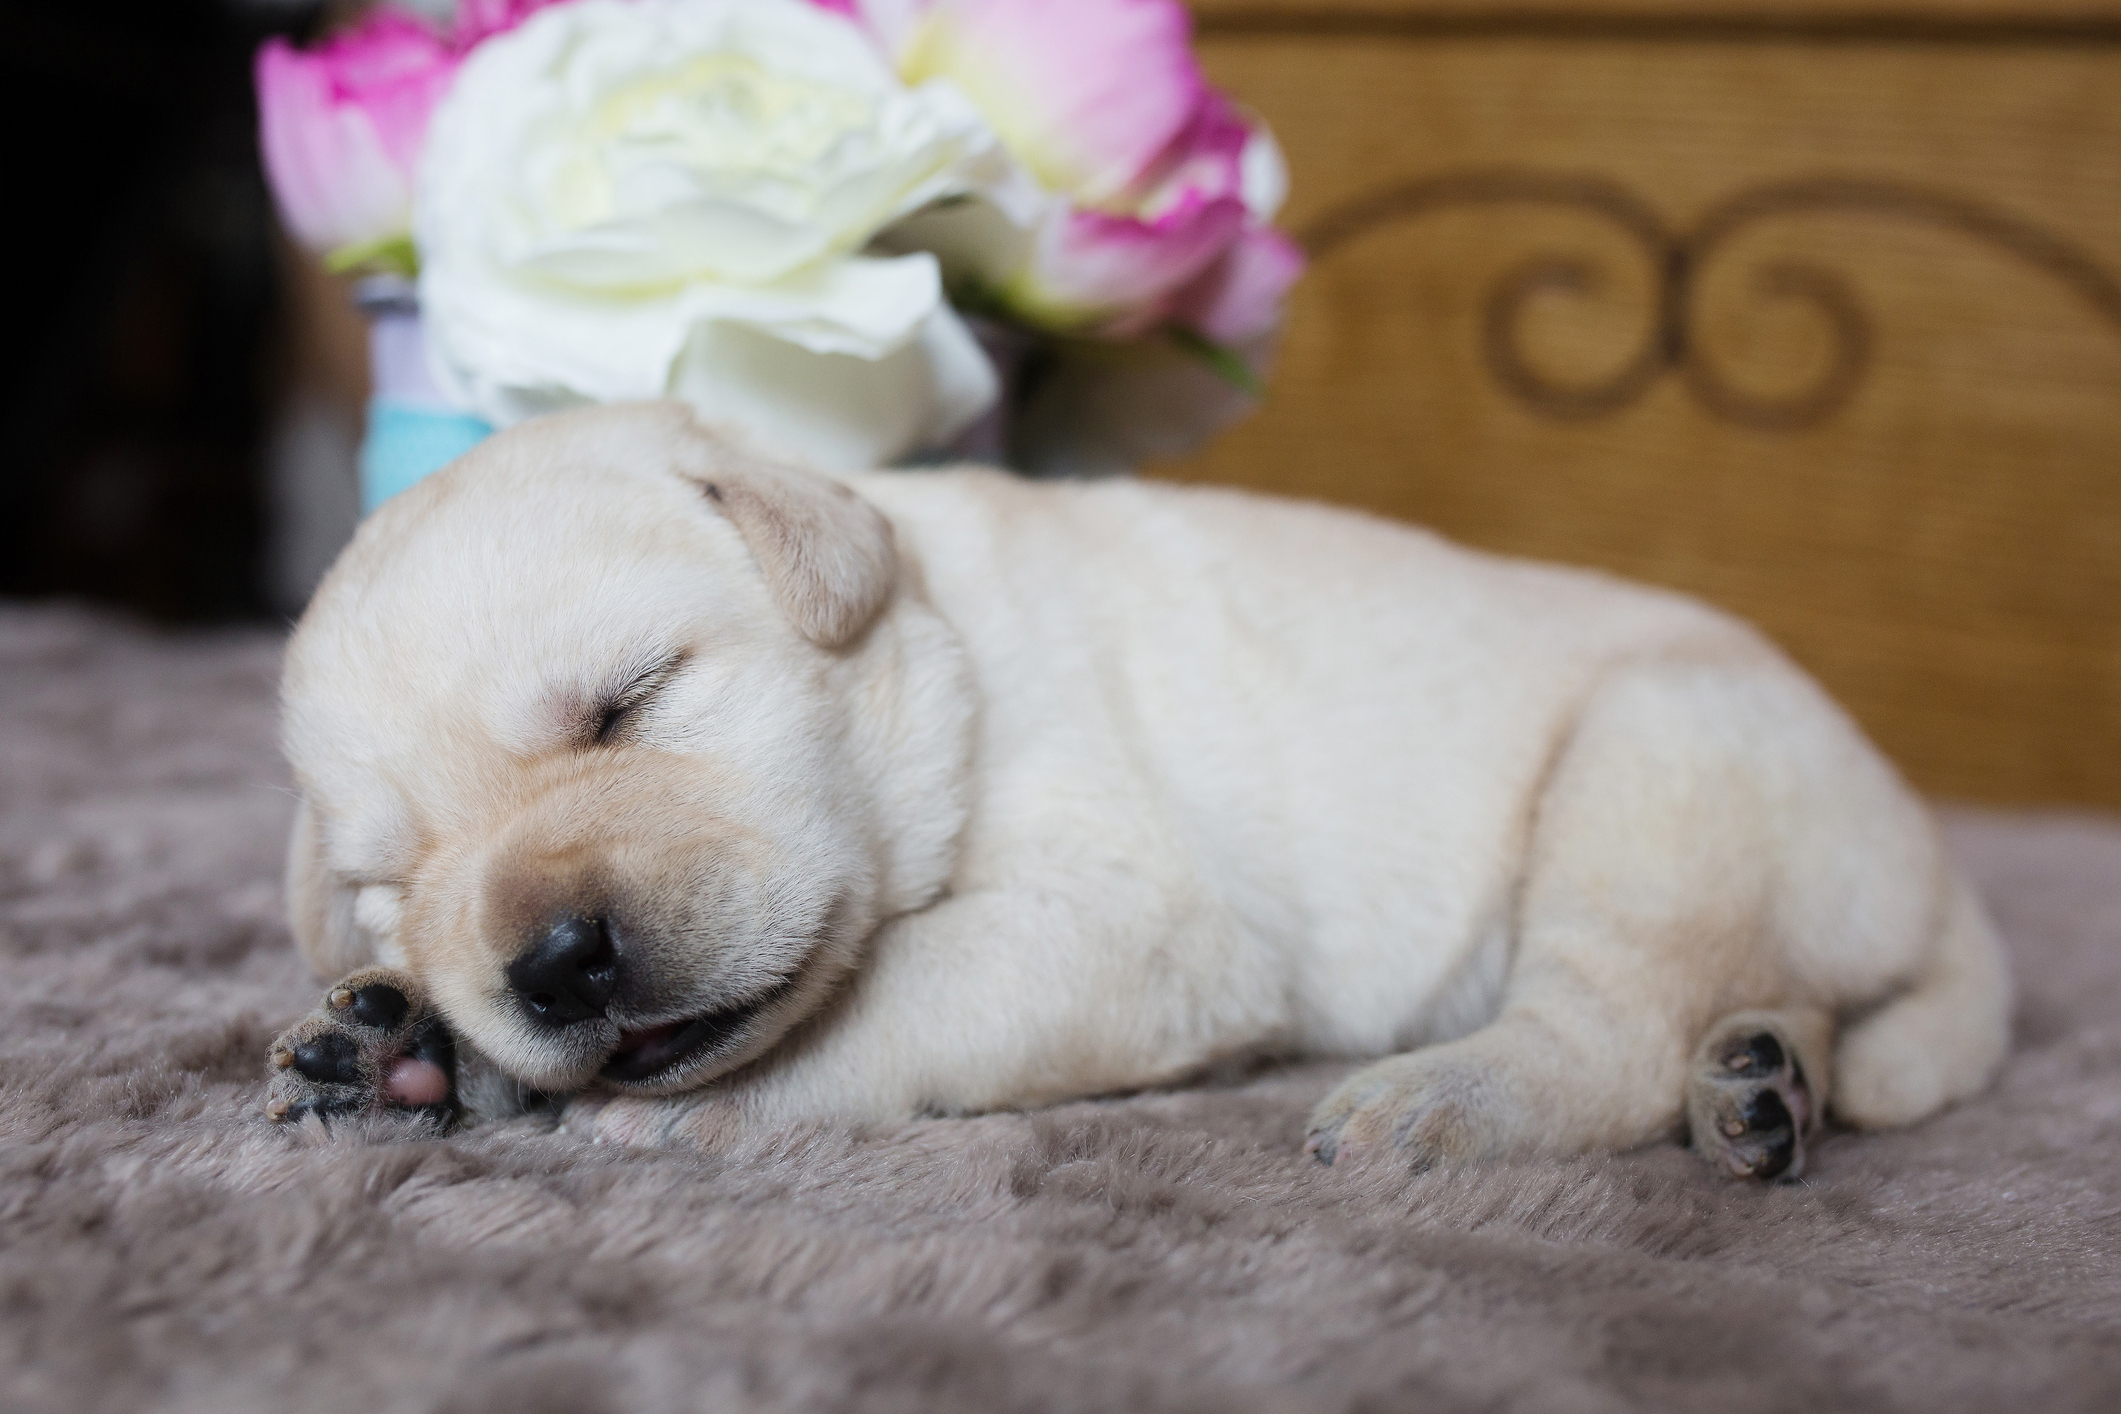 A newly born Labrador puppy